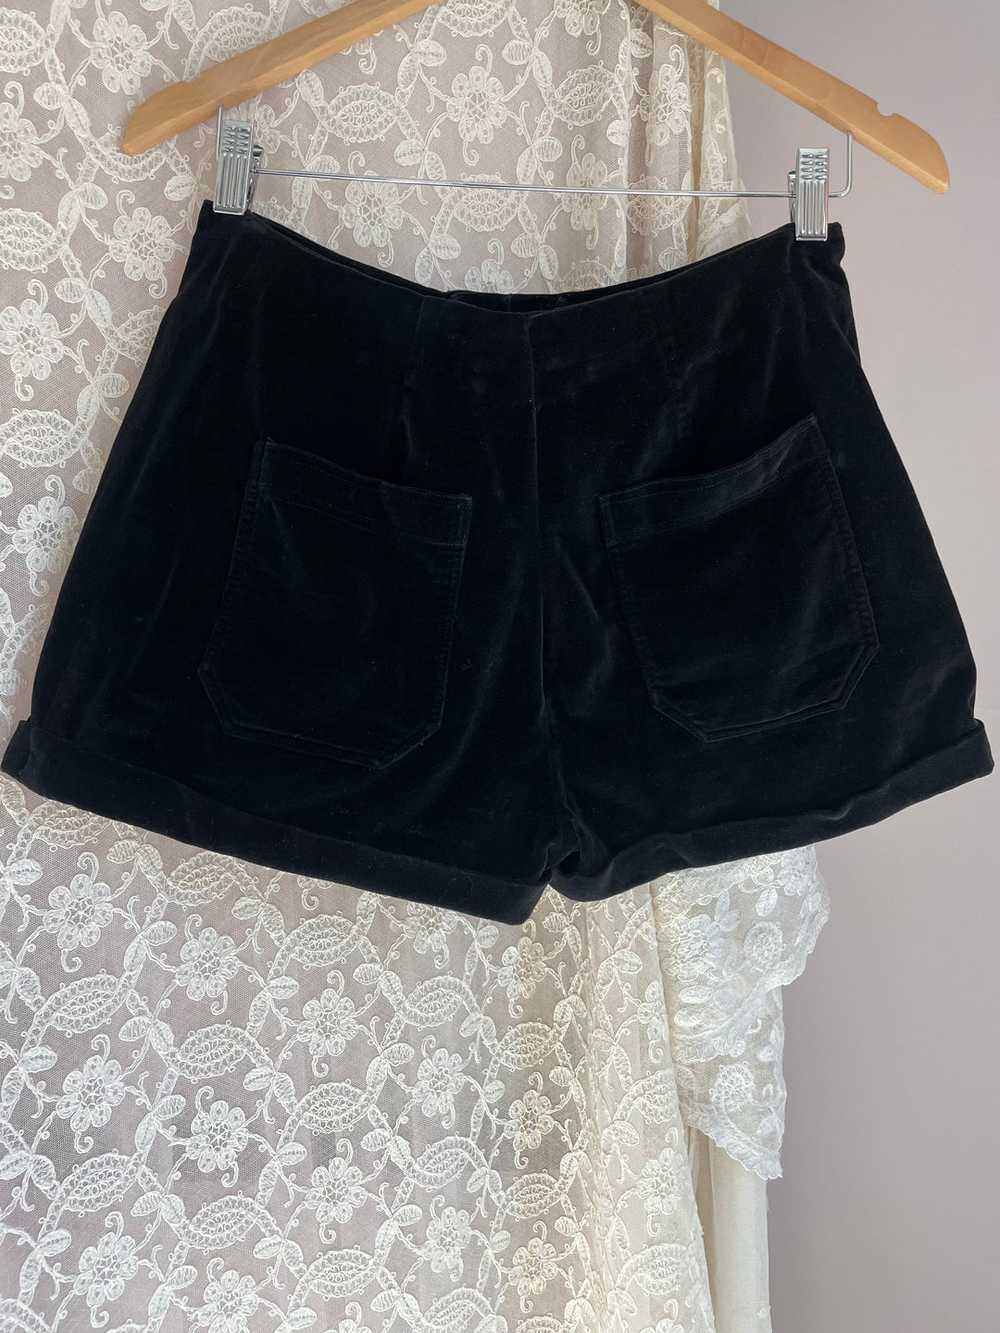 1970s Black Velvet Shorts Pocket - image 9